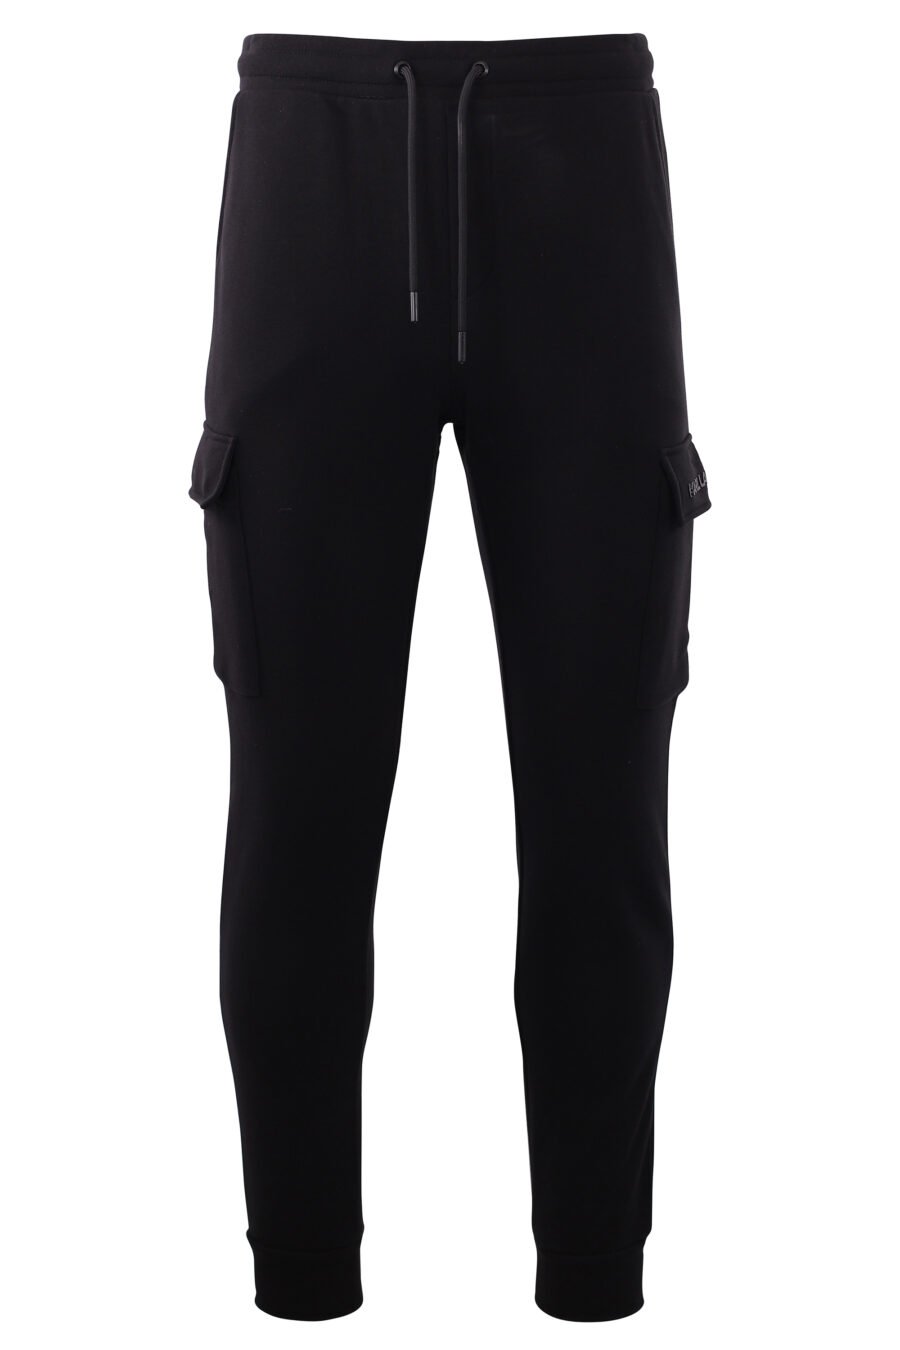 Pantalón de chandal negro con bolsillos laterales - IMG 8577